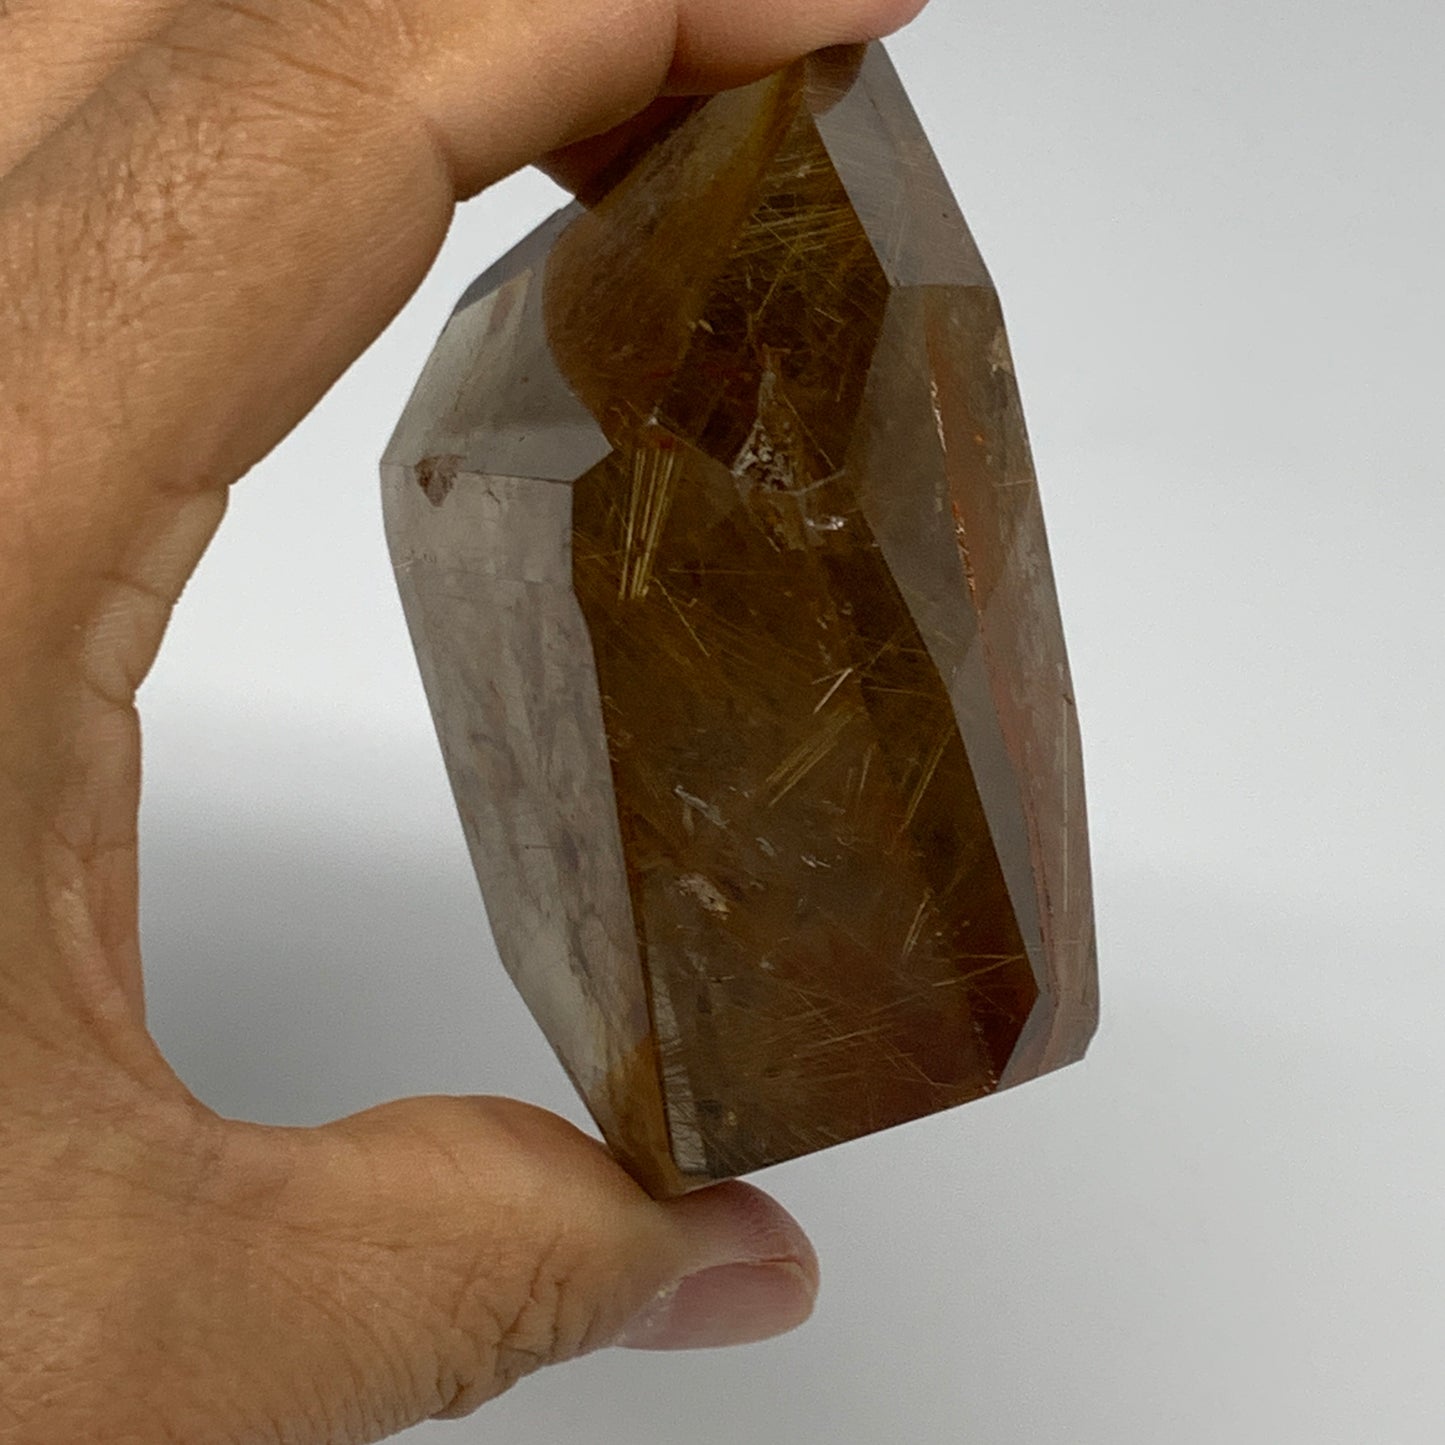 245.9g, 2.8"x3"x1.3", Natural Rutile Quartz Crystal Chunk from Brazil , B27477